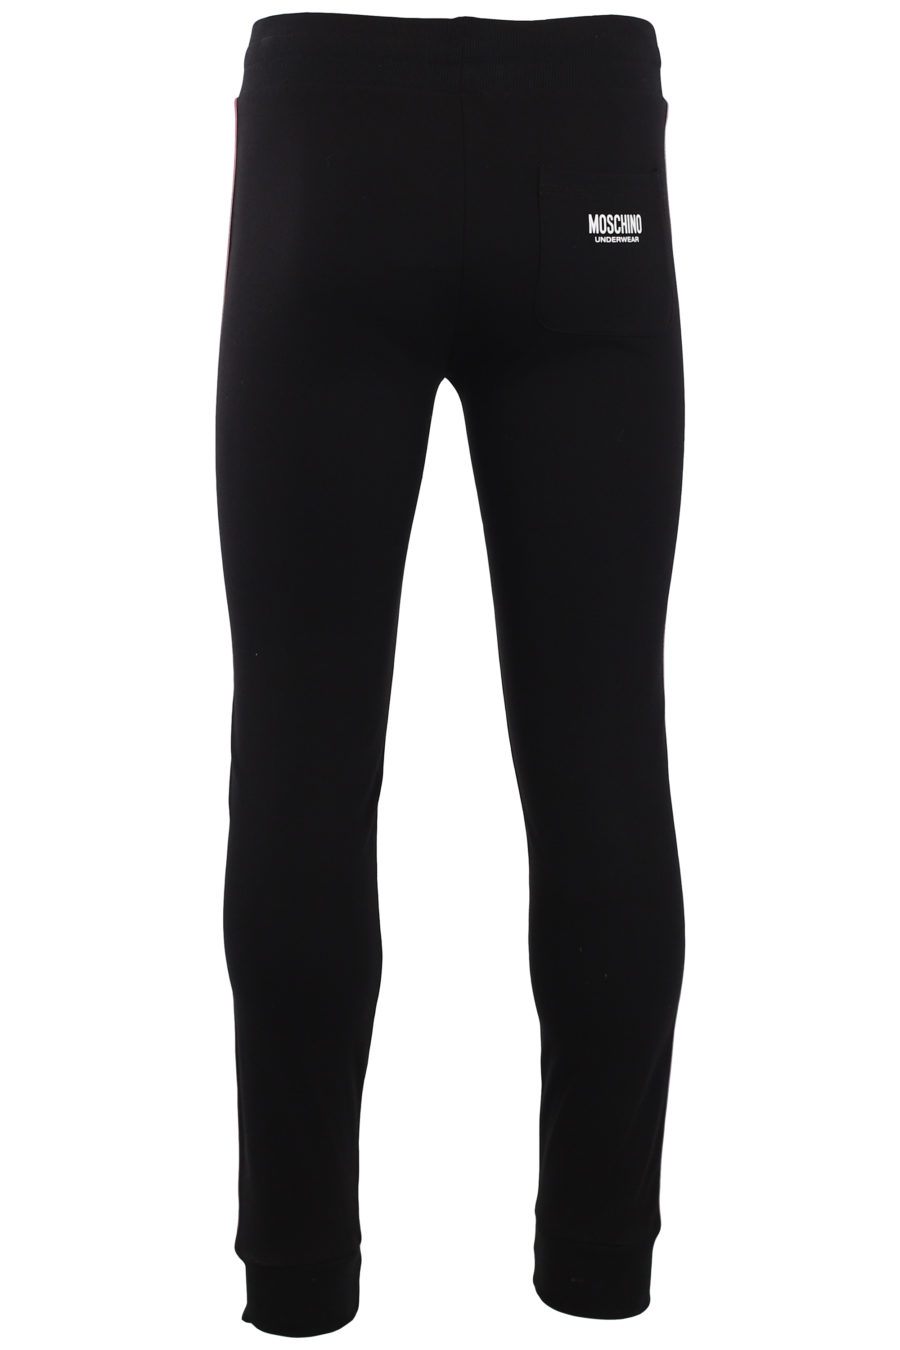 Pantalón chándal negro con logo en cinta laterales - IMG 9579